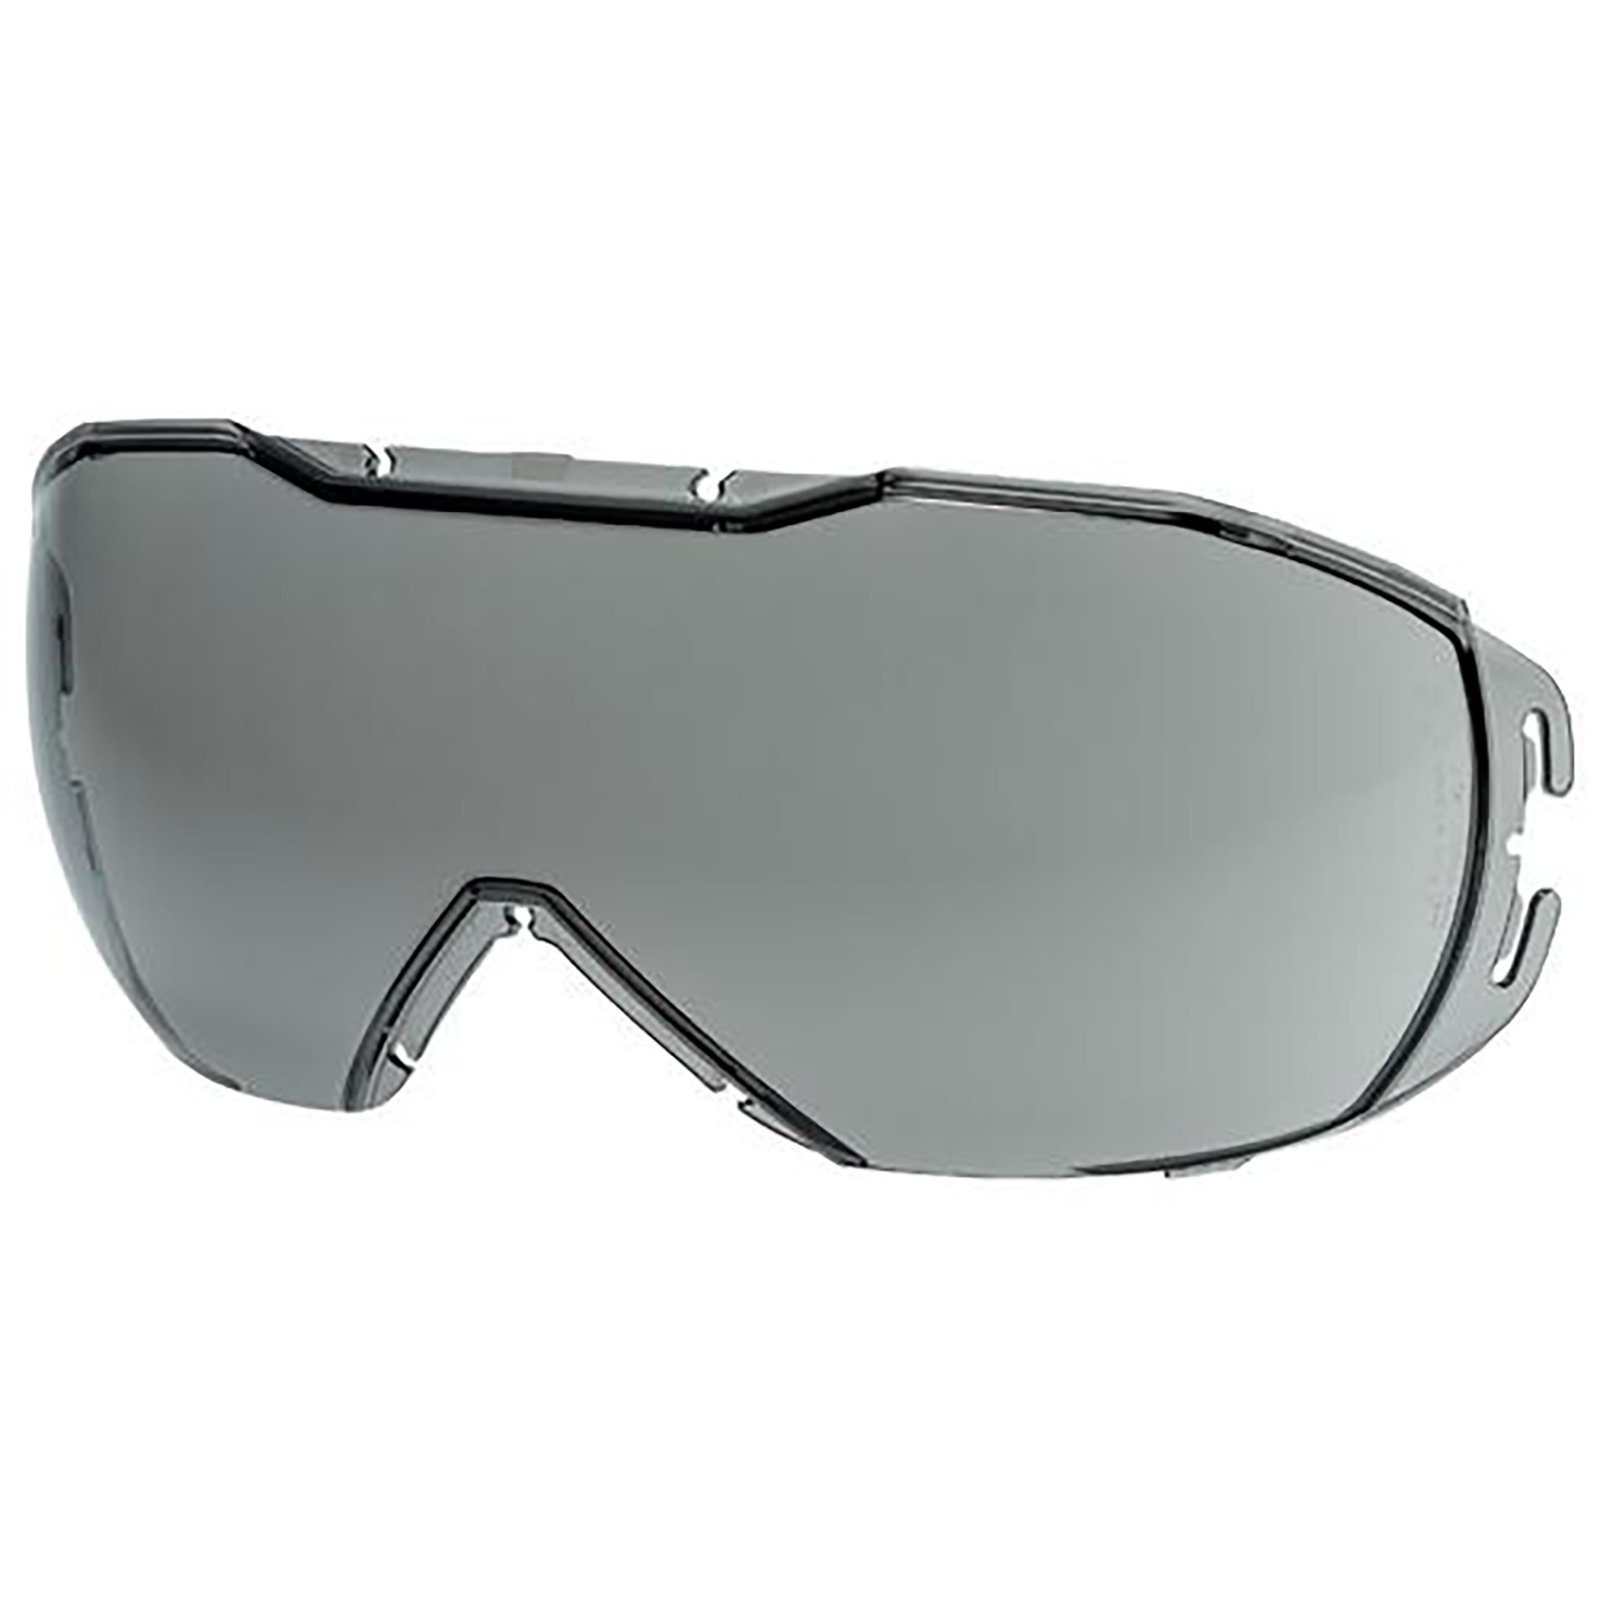 Uvex Arbeitsschutzbrille Ersatzscheibe 9320257 grau 23% sv exc.